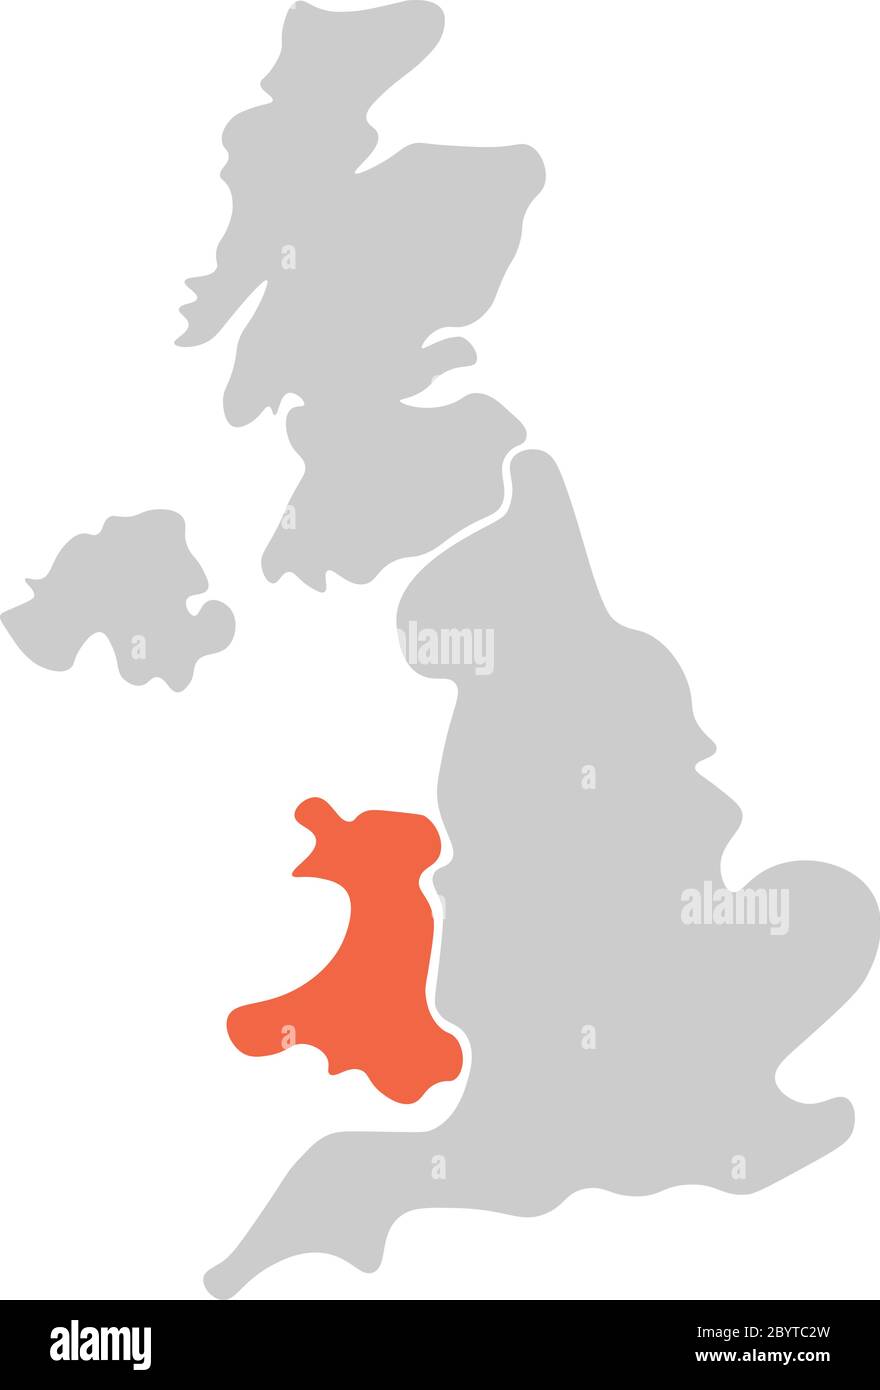 Vereinfachte, handgezeichnete, leere Karte des Vereinigten Königreichs von Großbritannien und Nordirland, Großbritannien. Aufgeteilt in vier Länder mit Wales rot hervorgehoben. Einfache flache Vektorgrafik. Stock Vektor